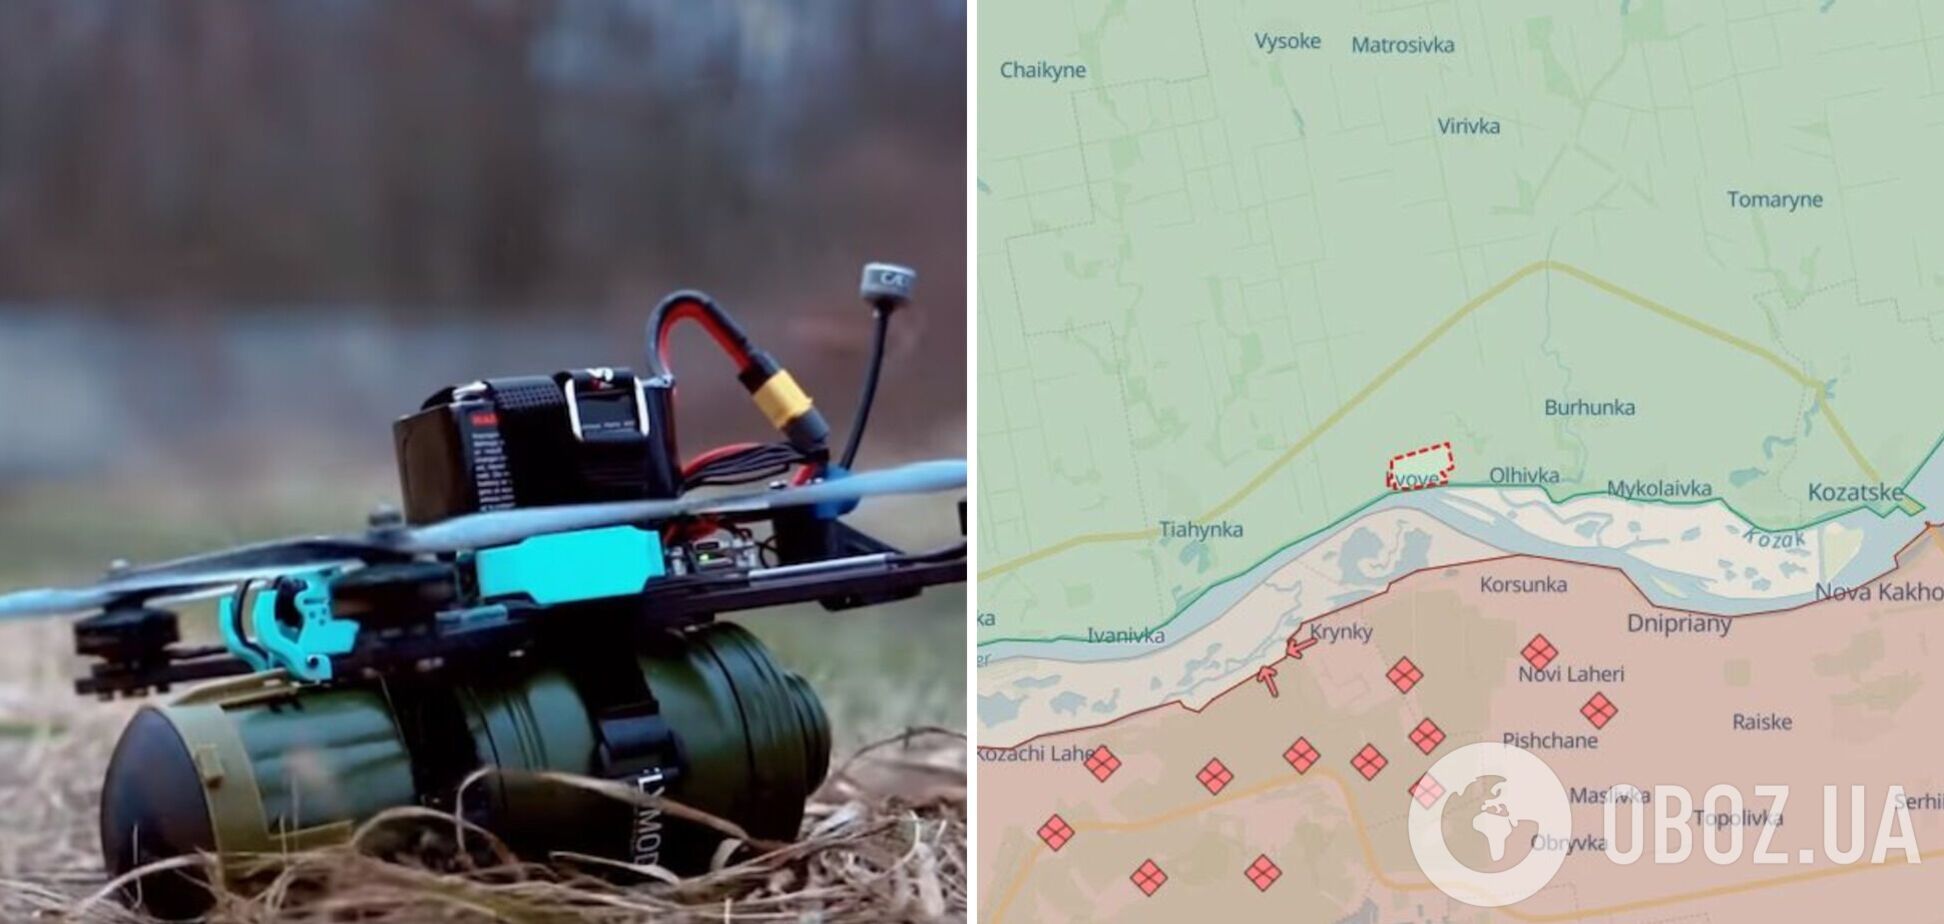 Розбирали FPV-дрон: на Херсонщині троє чоловіків загинули внаслідок детонації боєприпасу